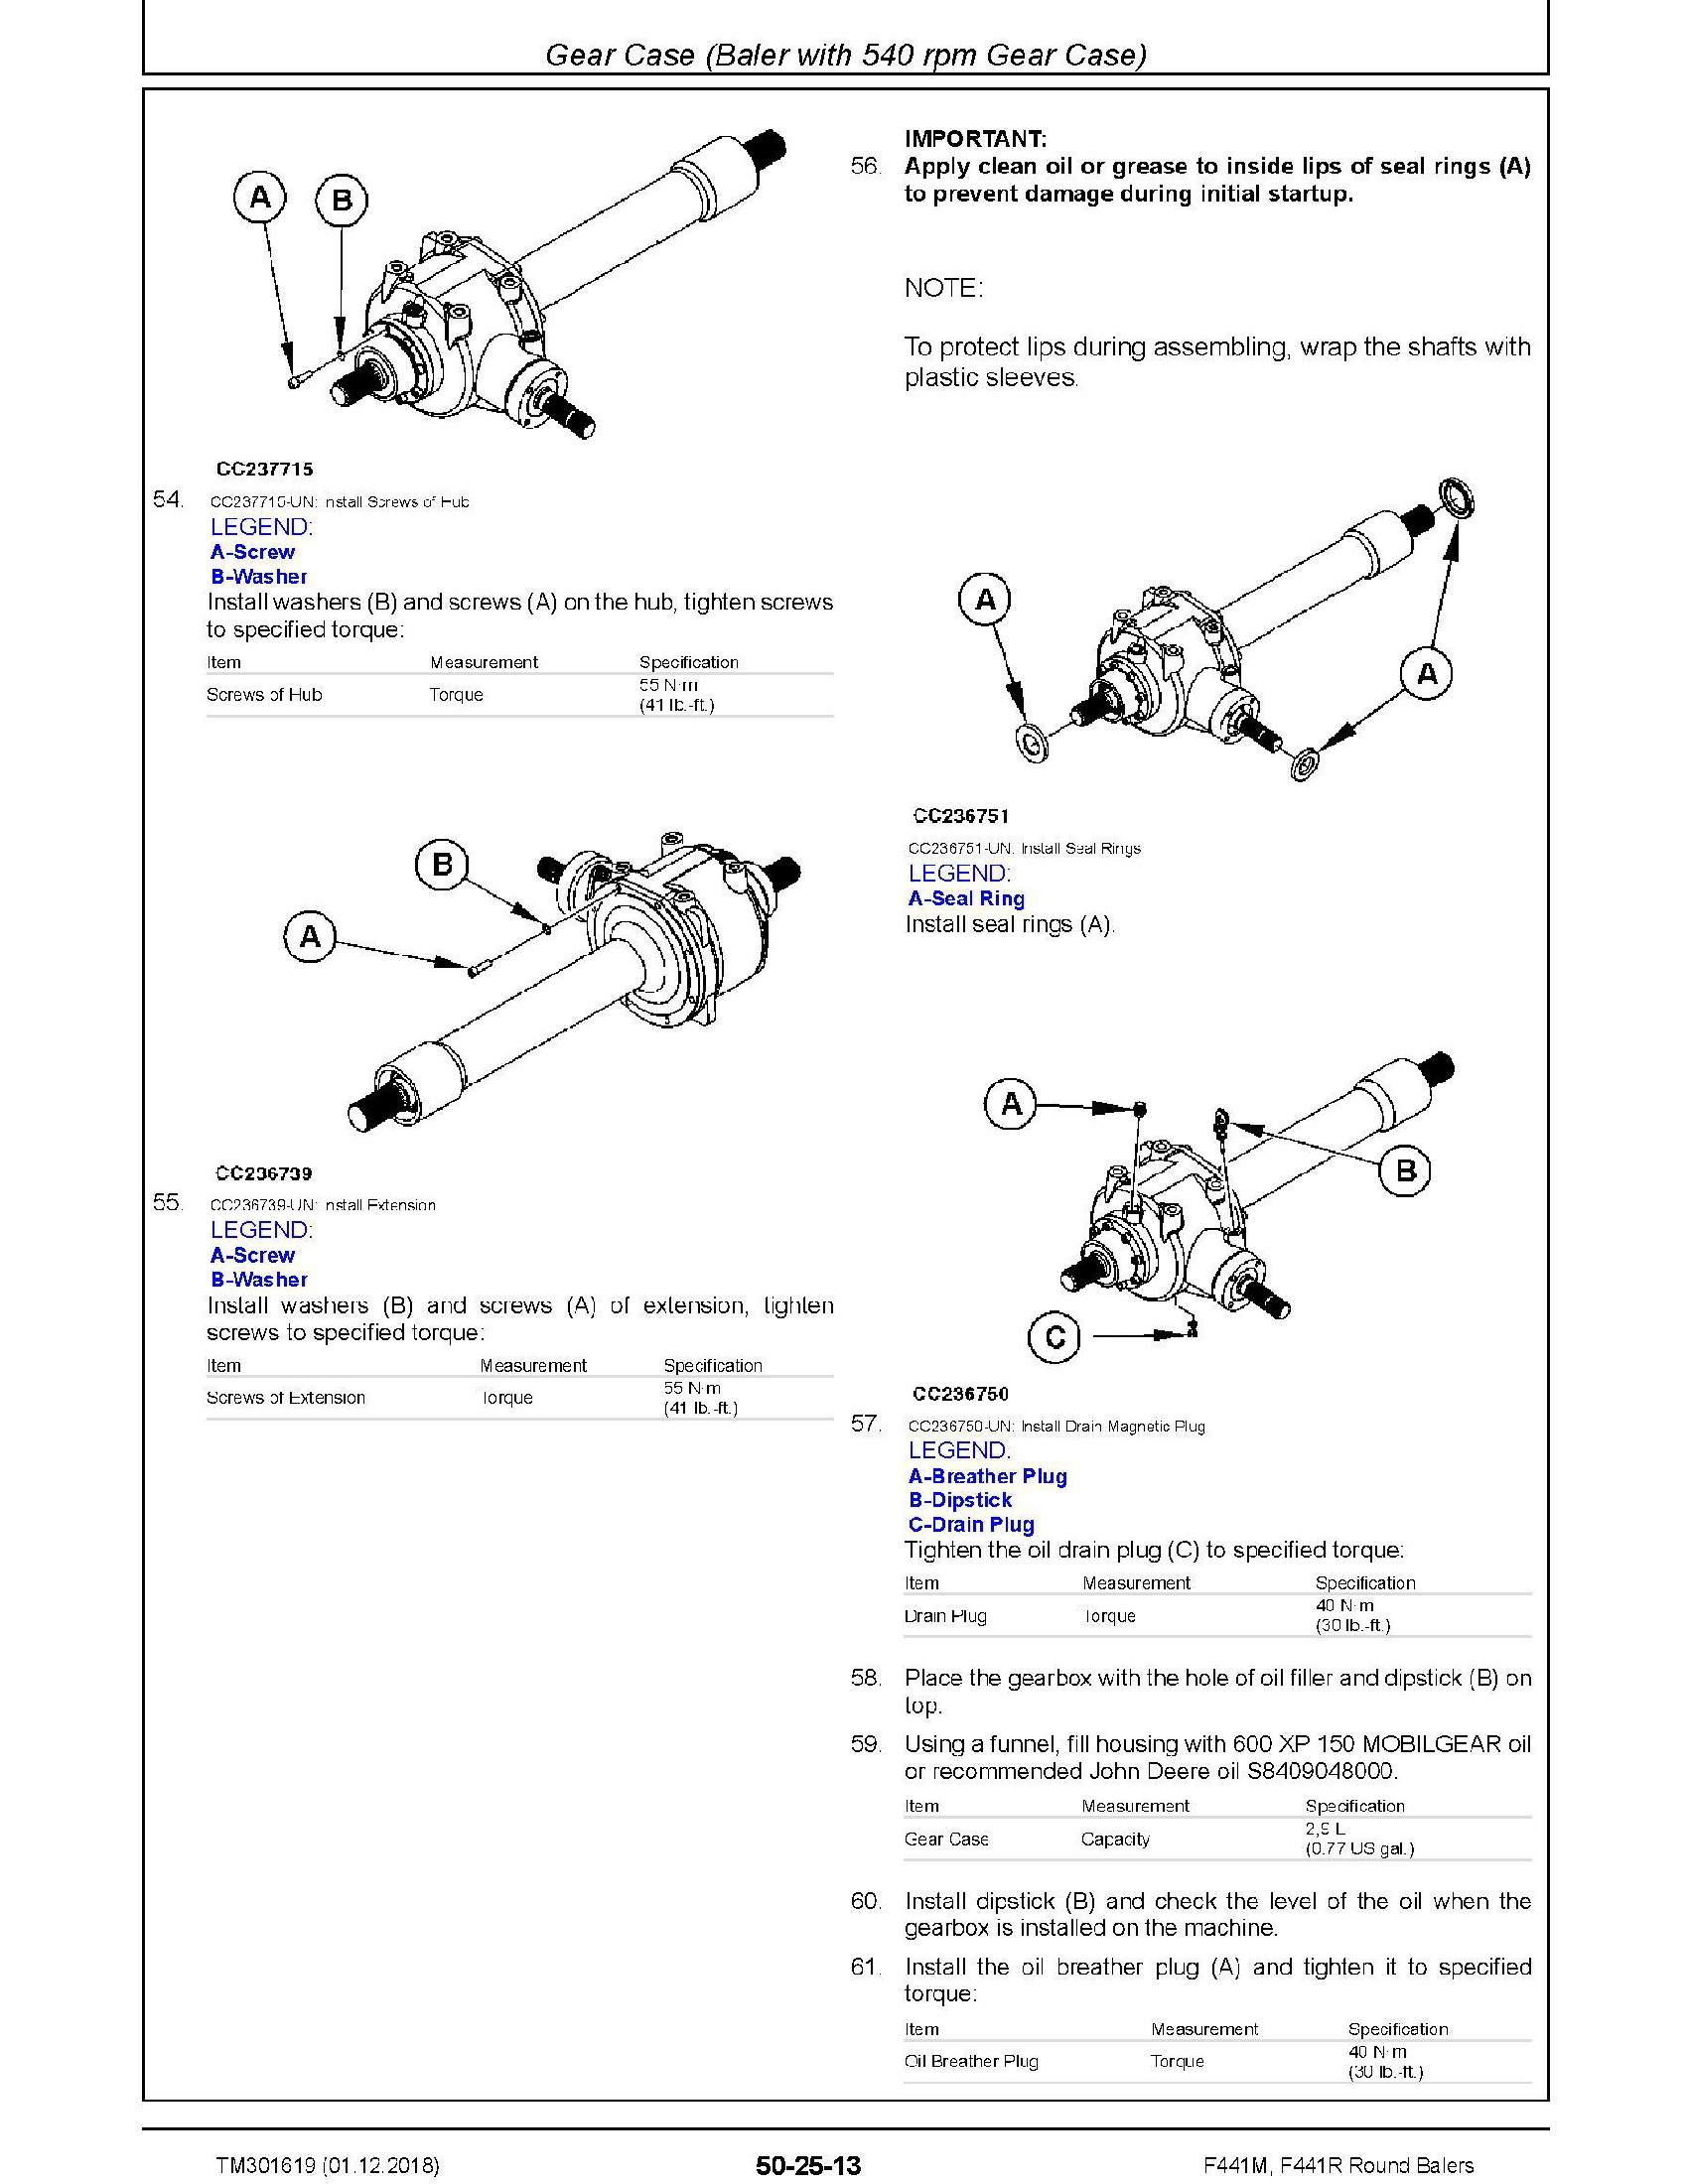 John Deere 909KH manual pdf